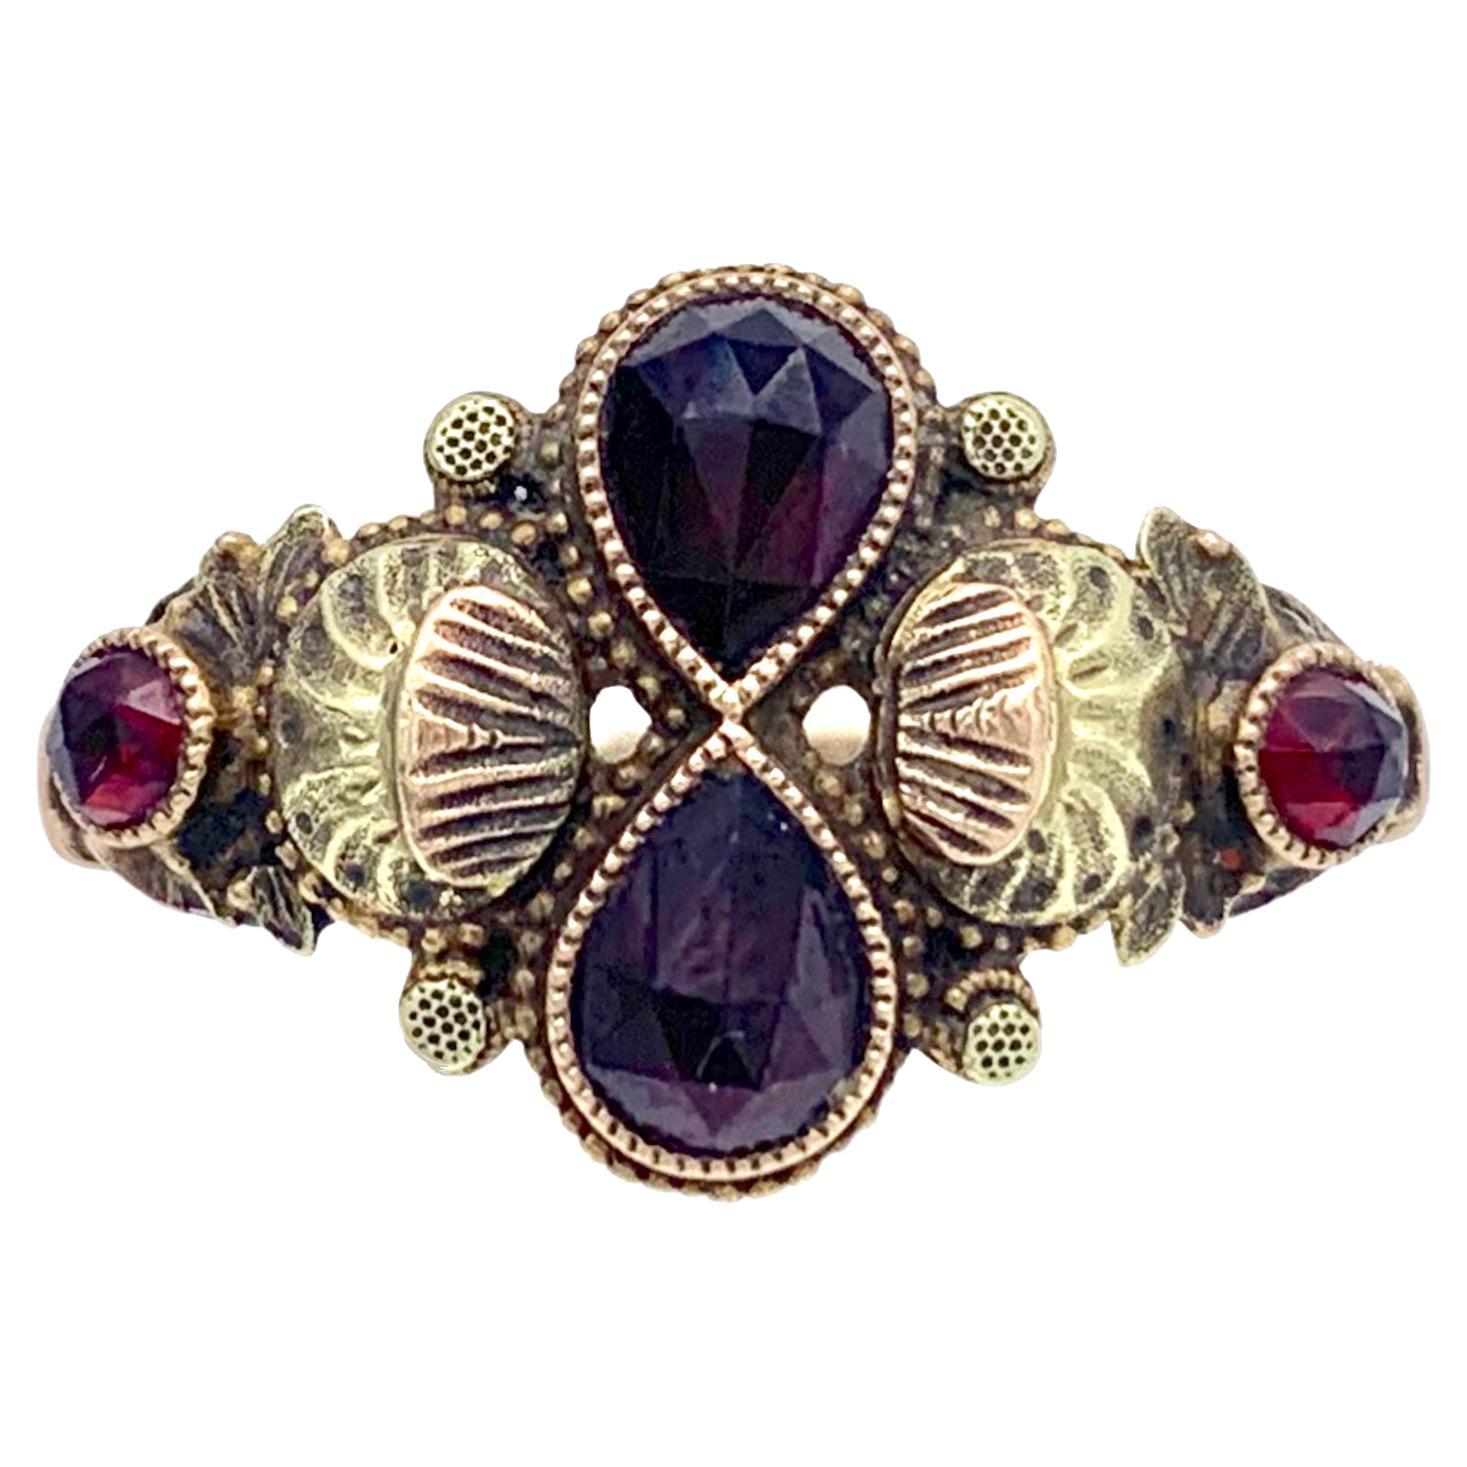 Antique Garnet Ring 3 Colour Gold 14 Karat Eternity Symbol Scallops Butterflies 